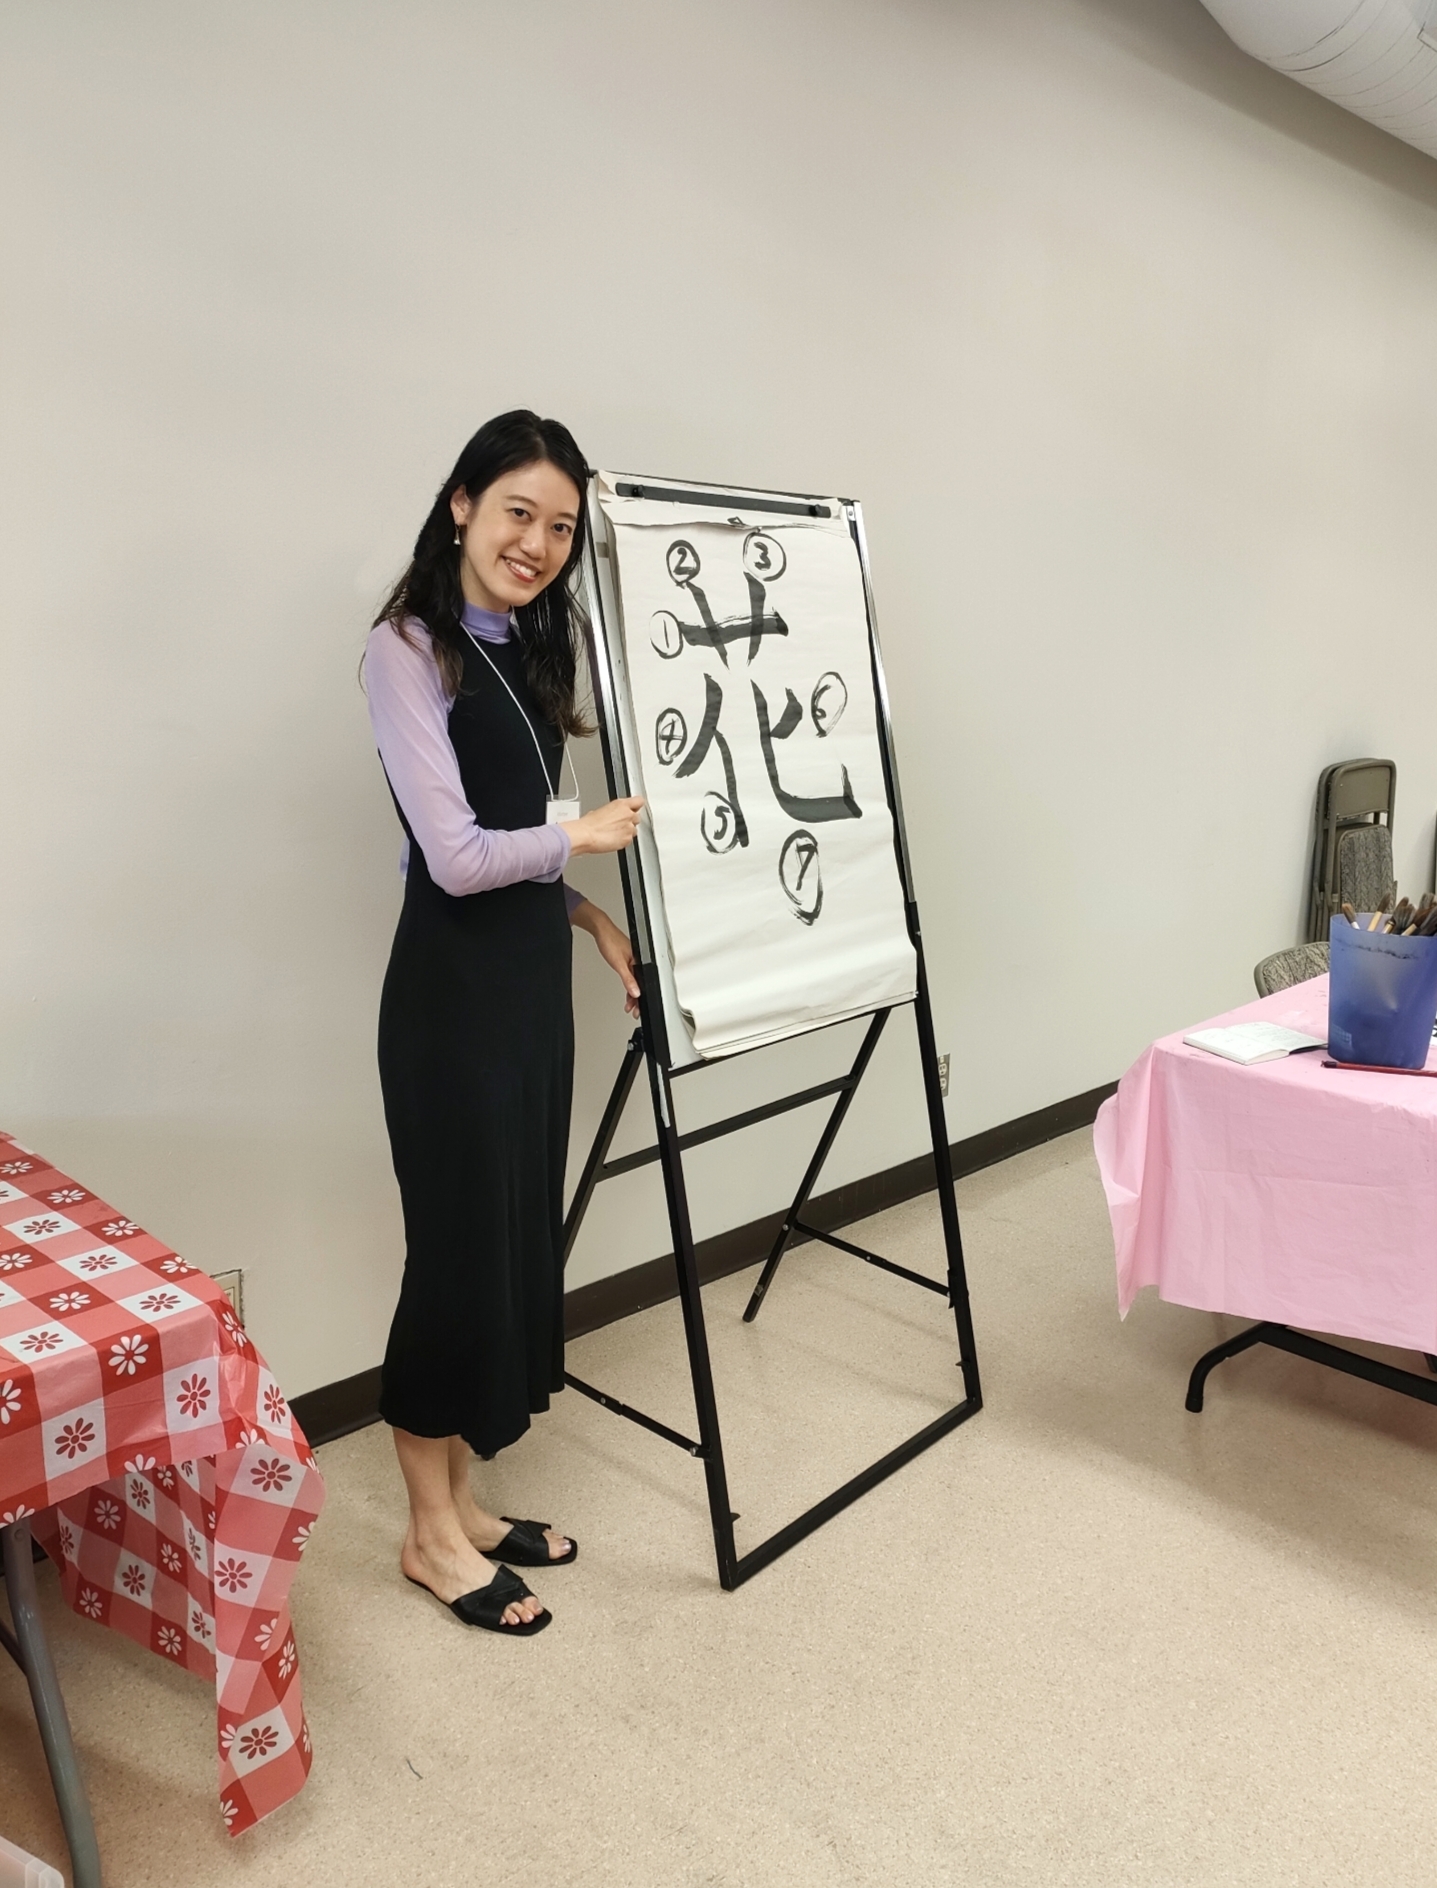 日系センターでの書道教室とカナダの小学生/Shodo (calligraphy) classes at the Nikkei Center and Canadian elementary school students